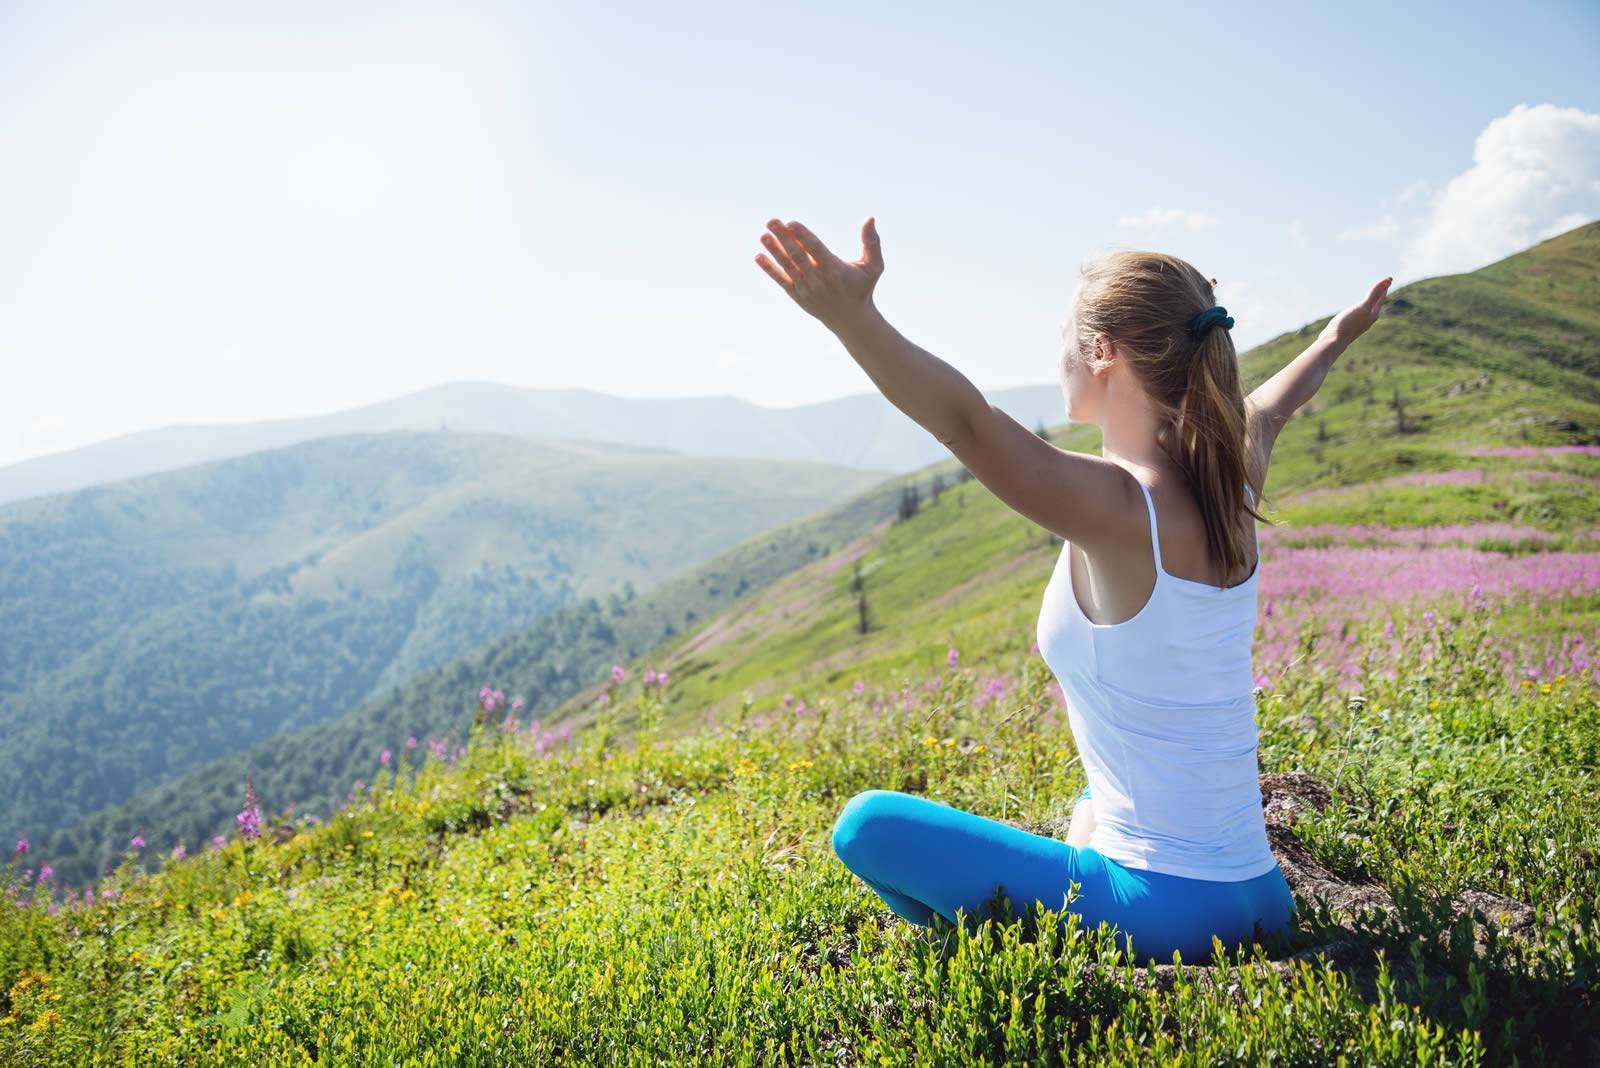 10 жизненных изменений для тех, кто сделал медитацию своей привычкой